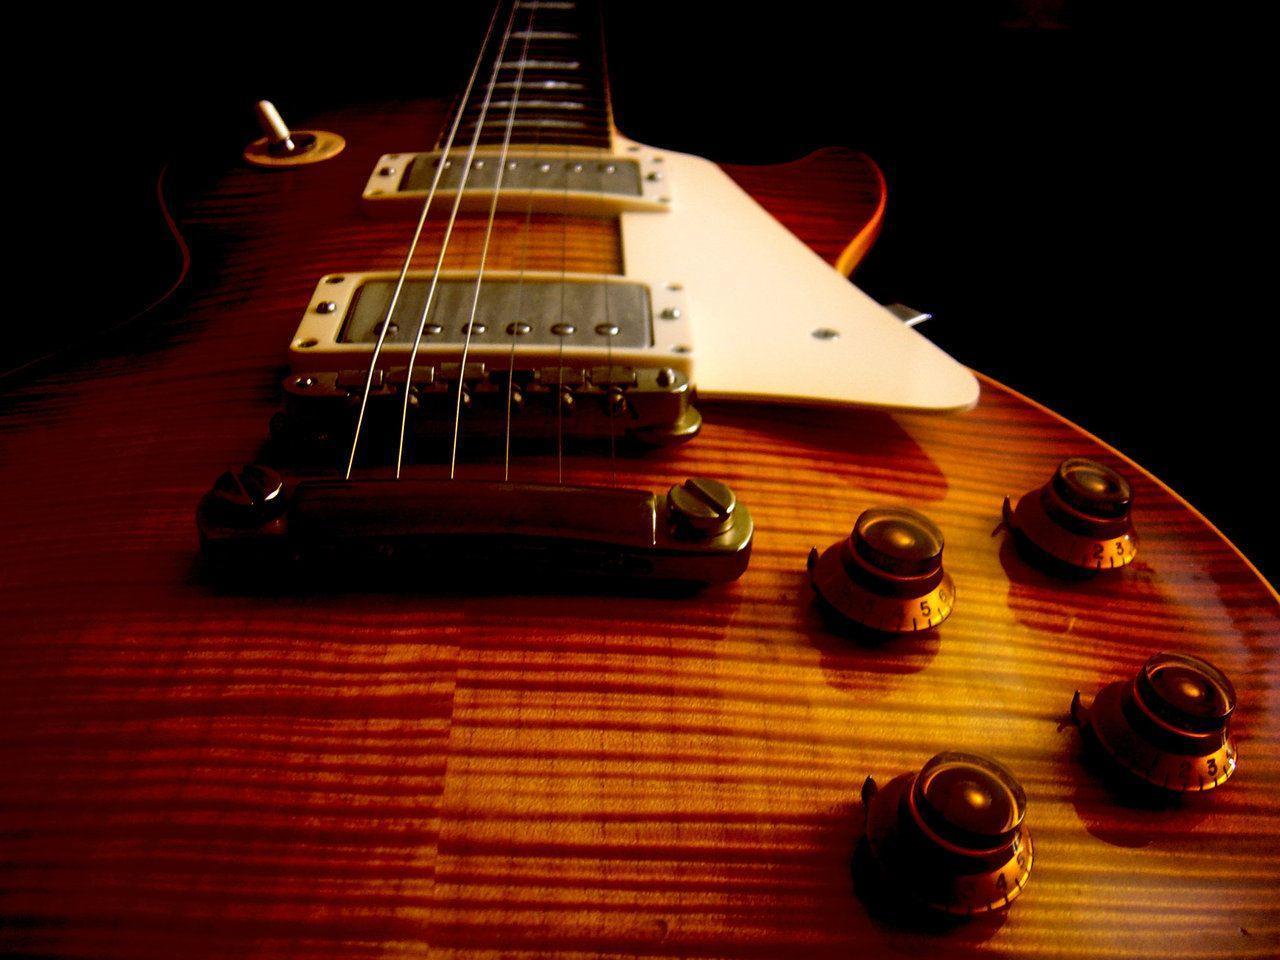 Image For > Gibson Les Paul Sunburst Wallpapers